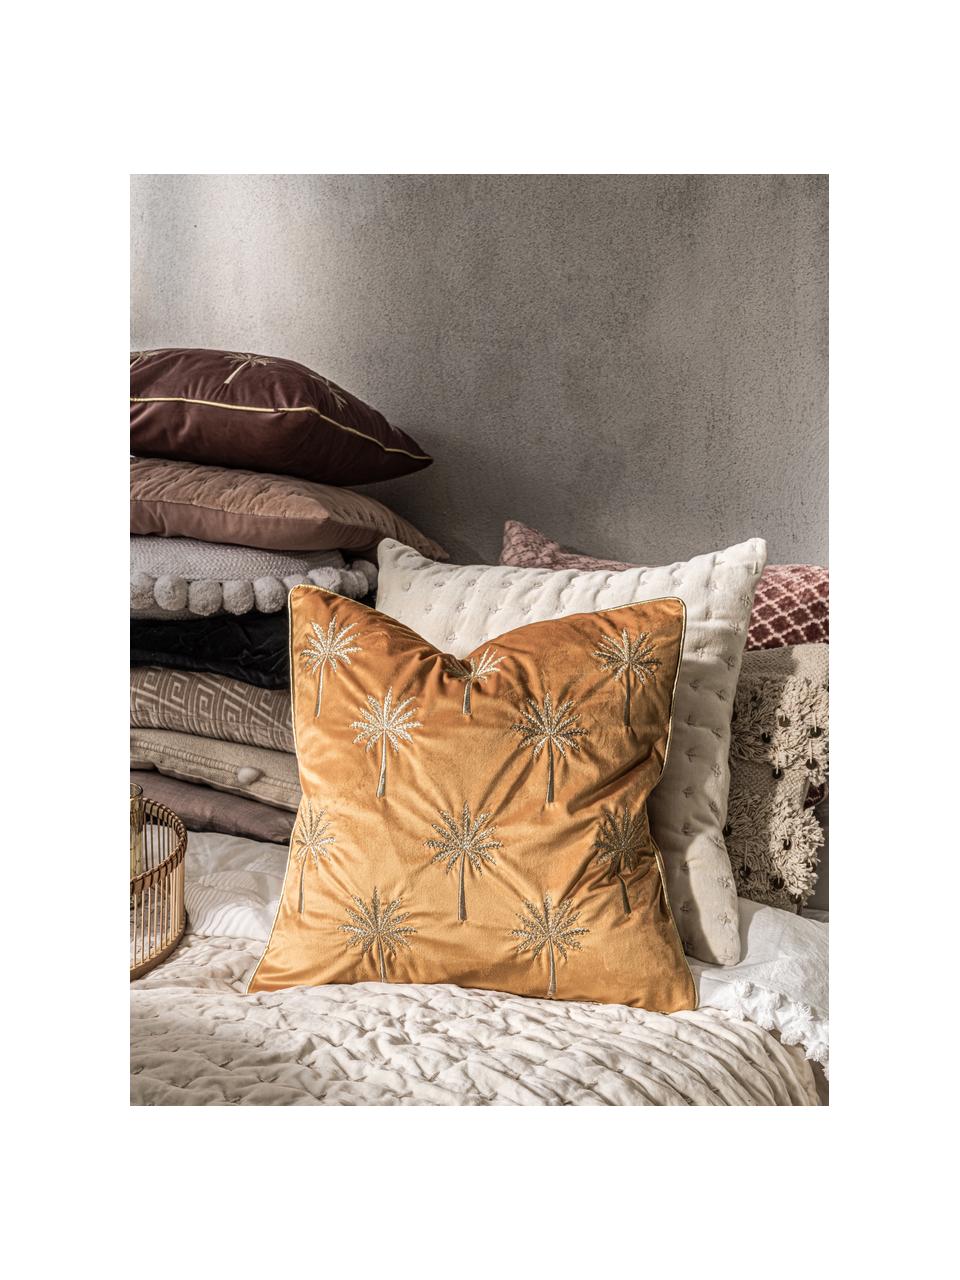 Vyšívaný sametový povlak na polštář s lemováním Palms, Oranžově žlutá, zlaté barvy